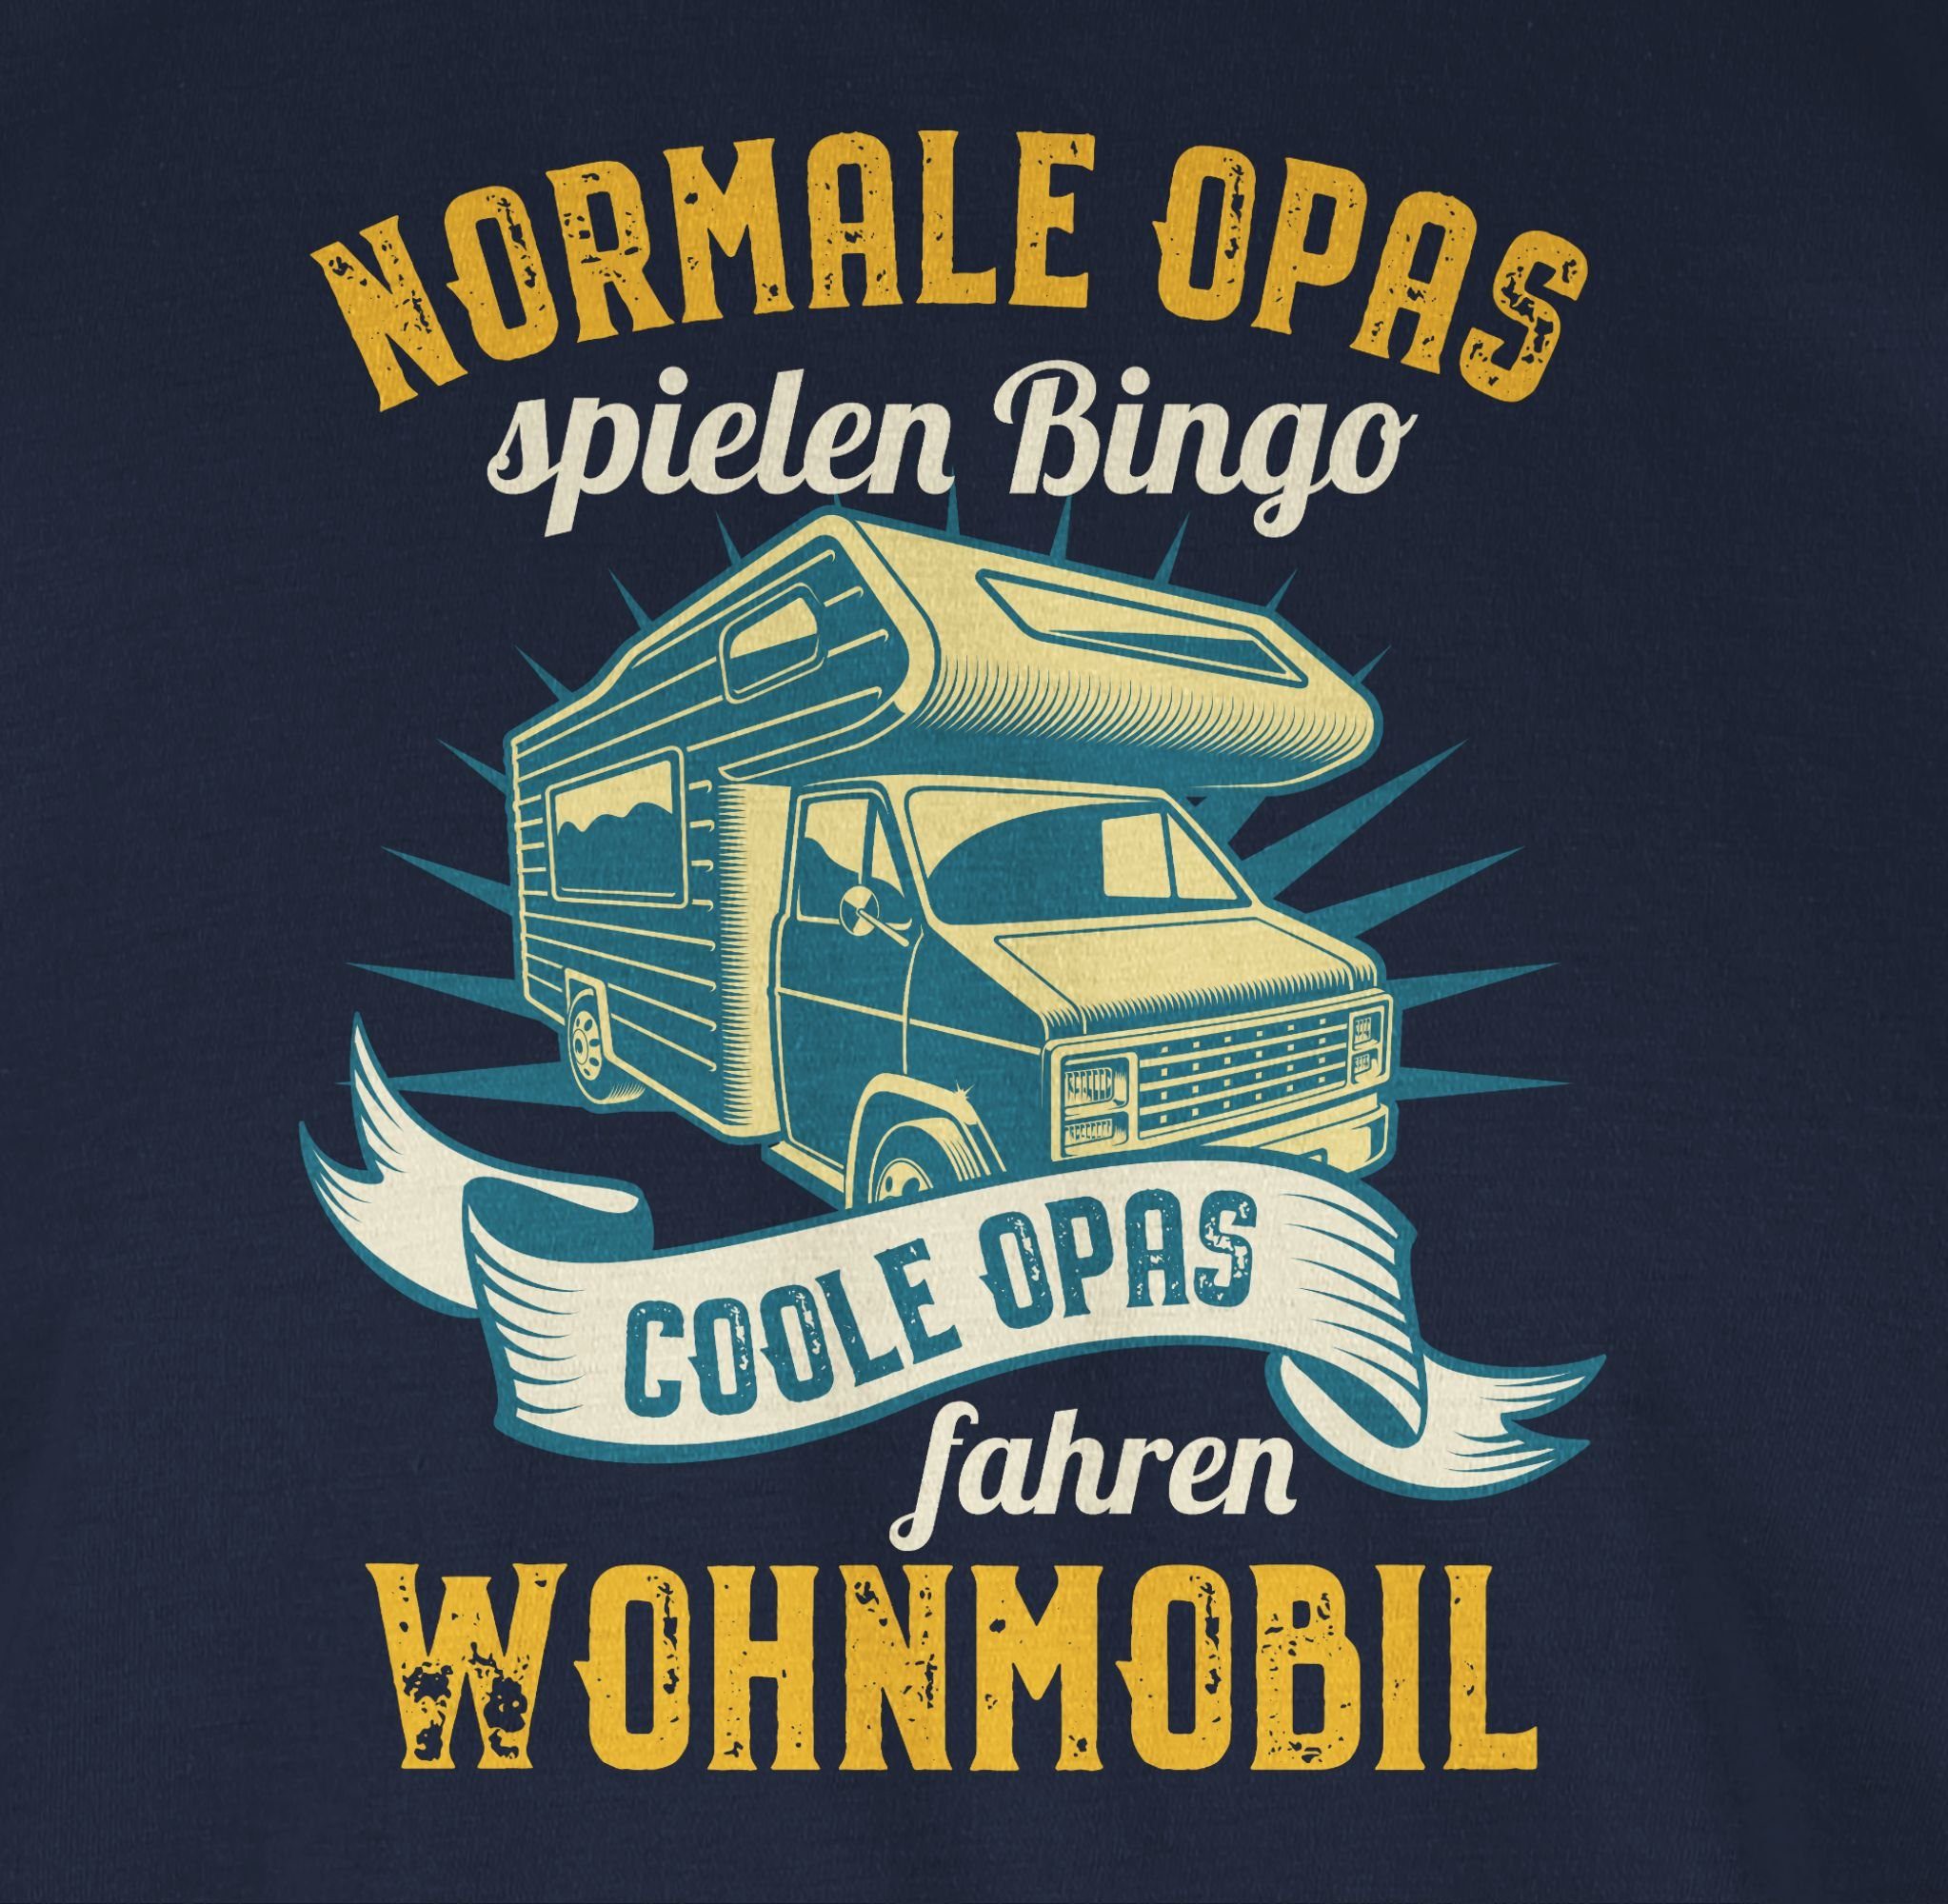 Shirtracer T-Shirt Normale Opas spielen Opas Opa - Bingo Geschenke Coole fahren 01 Blau Navy Wohnmobil